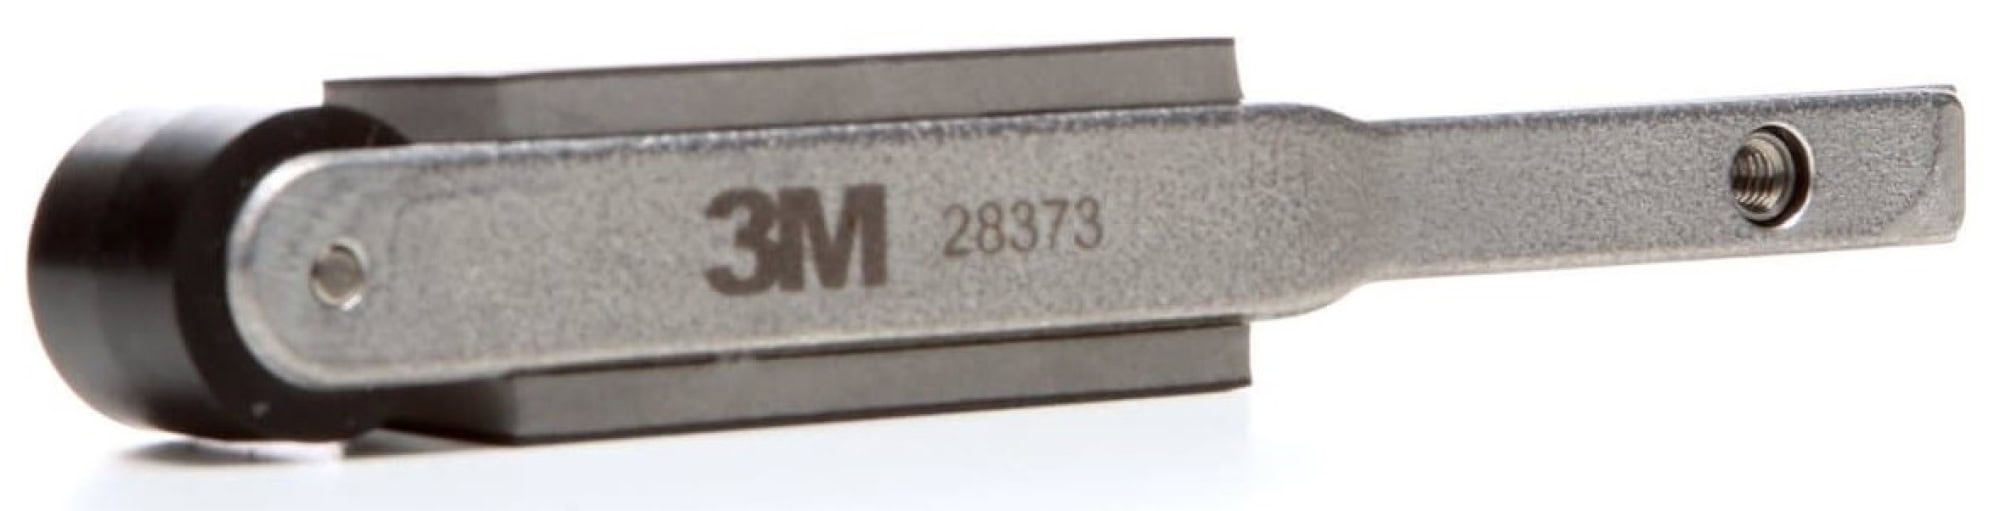 3M™ 28373, 16 - 19 mm x 521 mm, Gerade, Rolle: Ø 18 mm, Kontaktarm für Feilenbandmaschine, Für breitere & längere Bänder